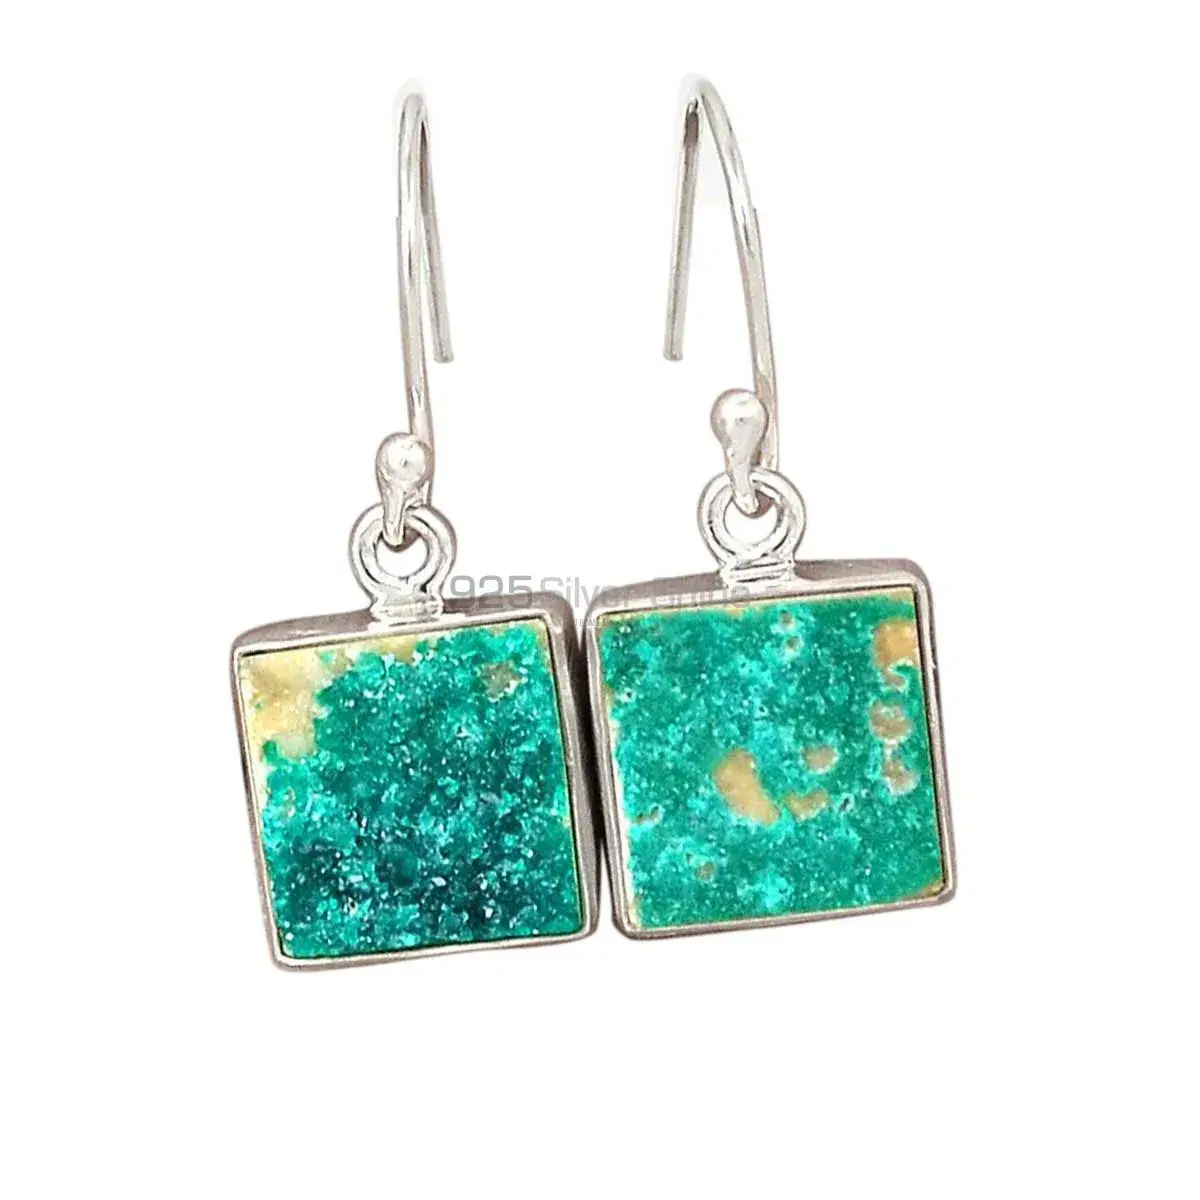 Beautiful 925 Sterling Silver Handmade Earrings Suppliers In Azurite Druzy Gemstone Jewelry 925SE2708_9